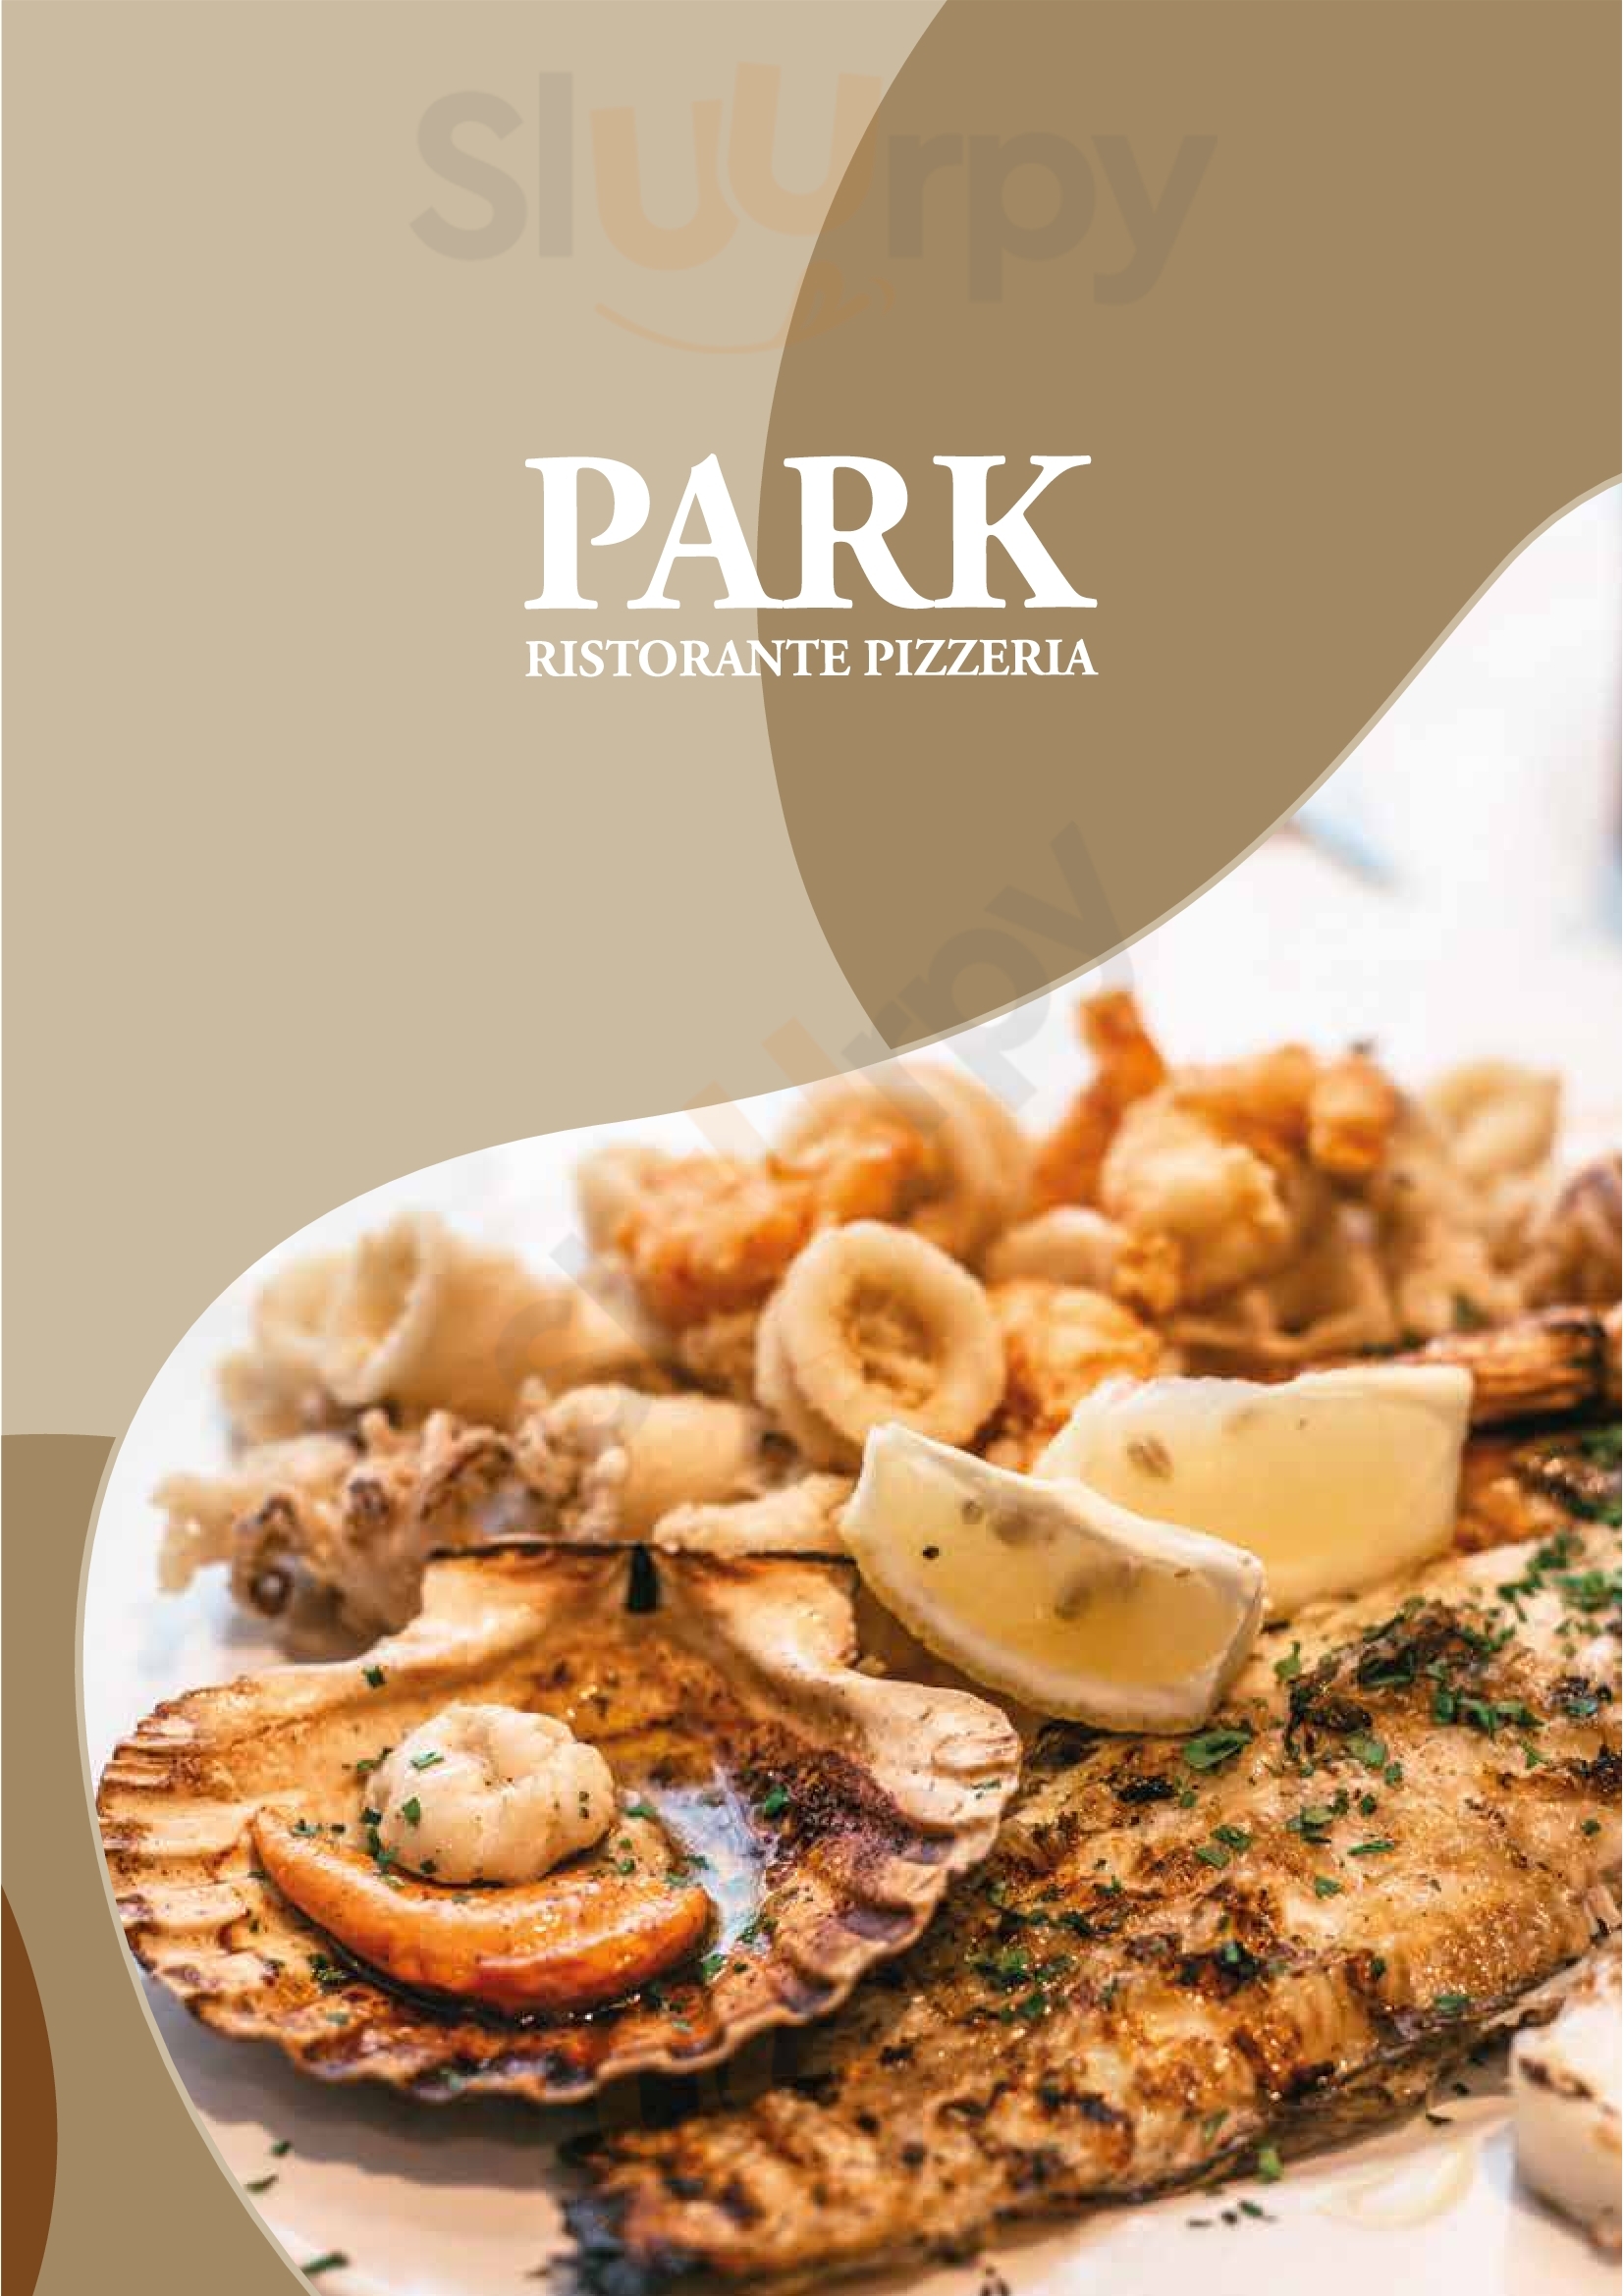 Ristorante Pizzeria Park Chioggia menù 1 pagina